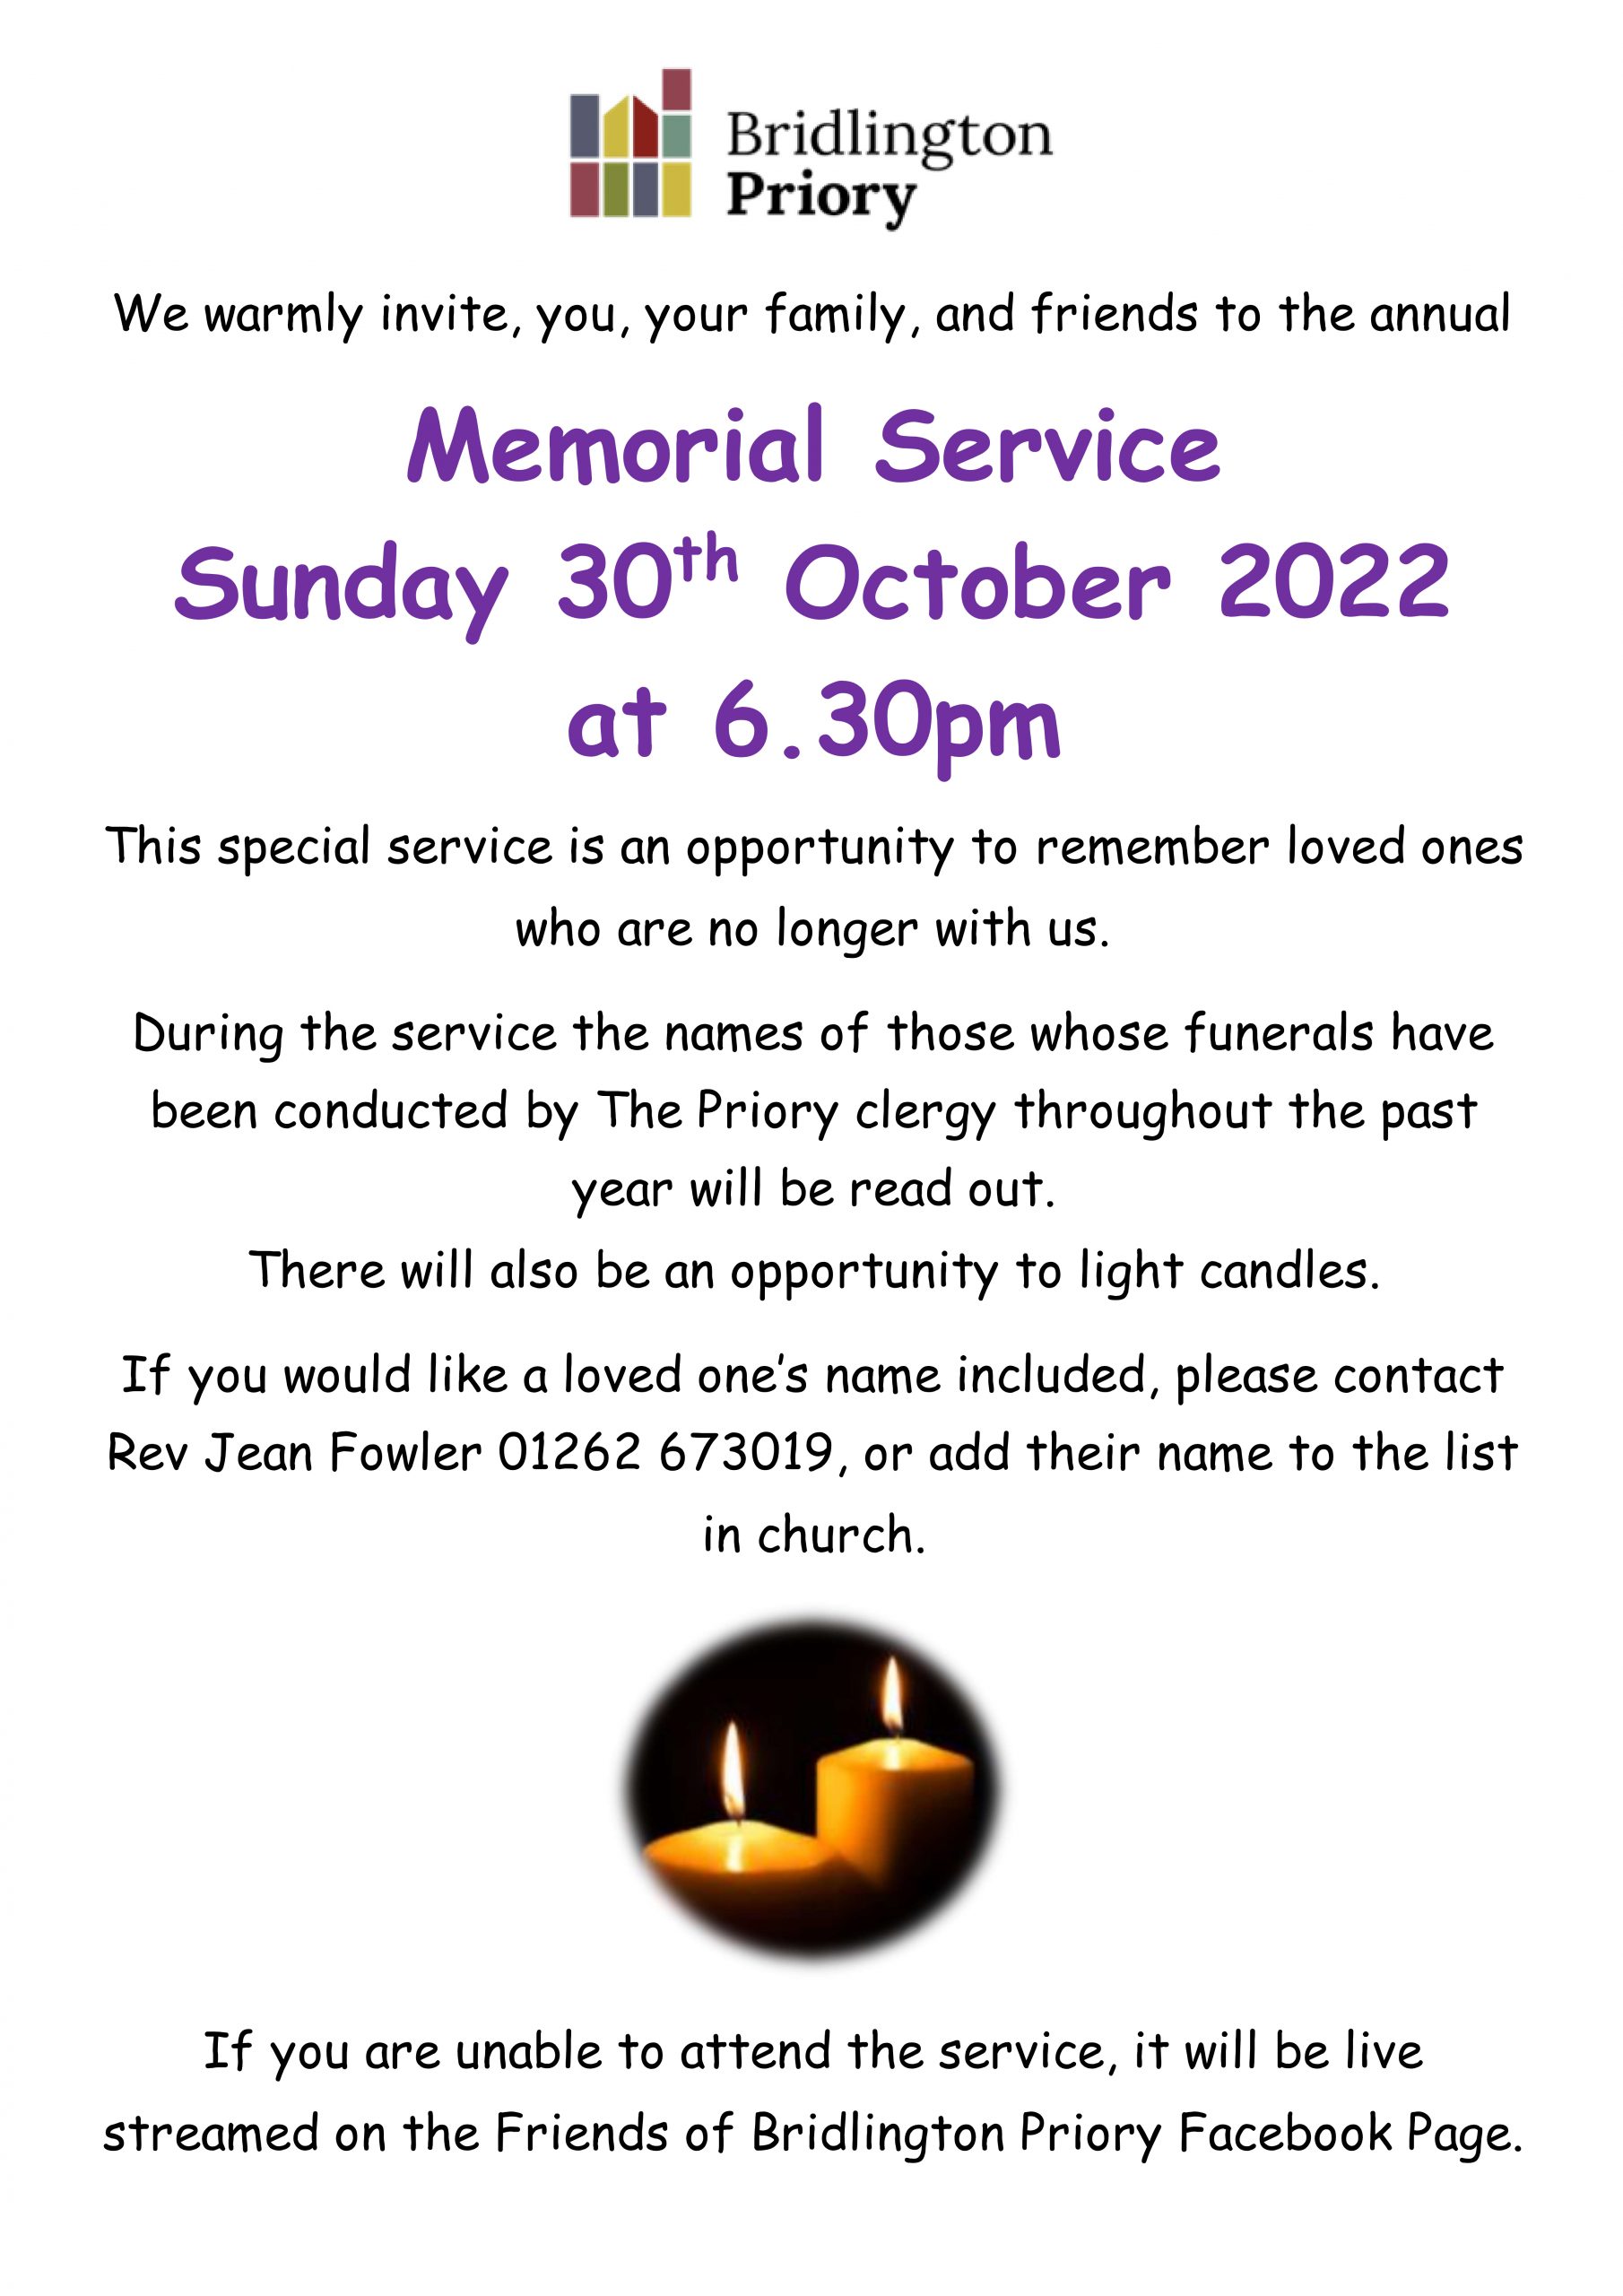 Bridlington Priory - Memorial Service 2022